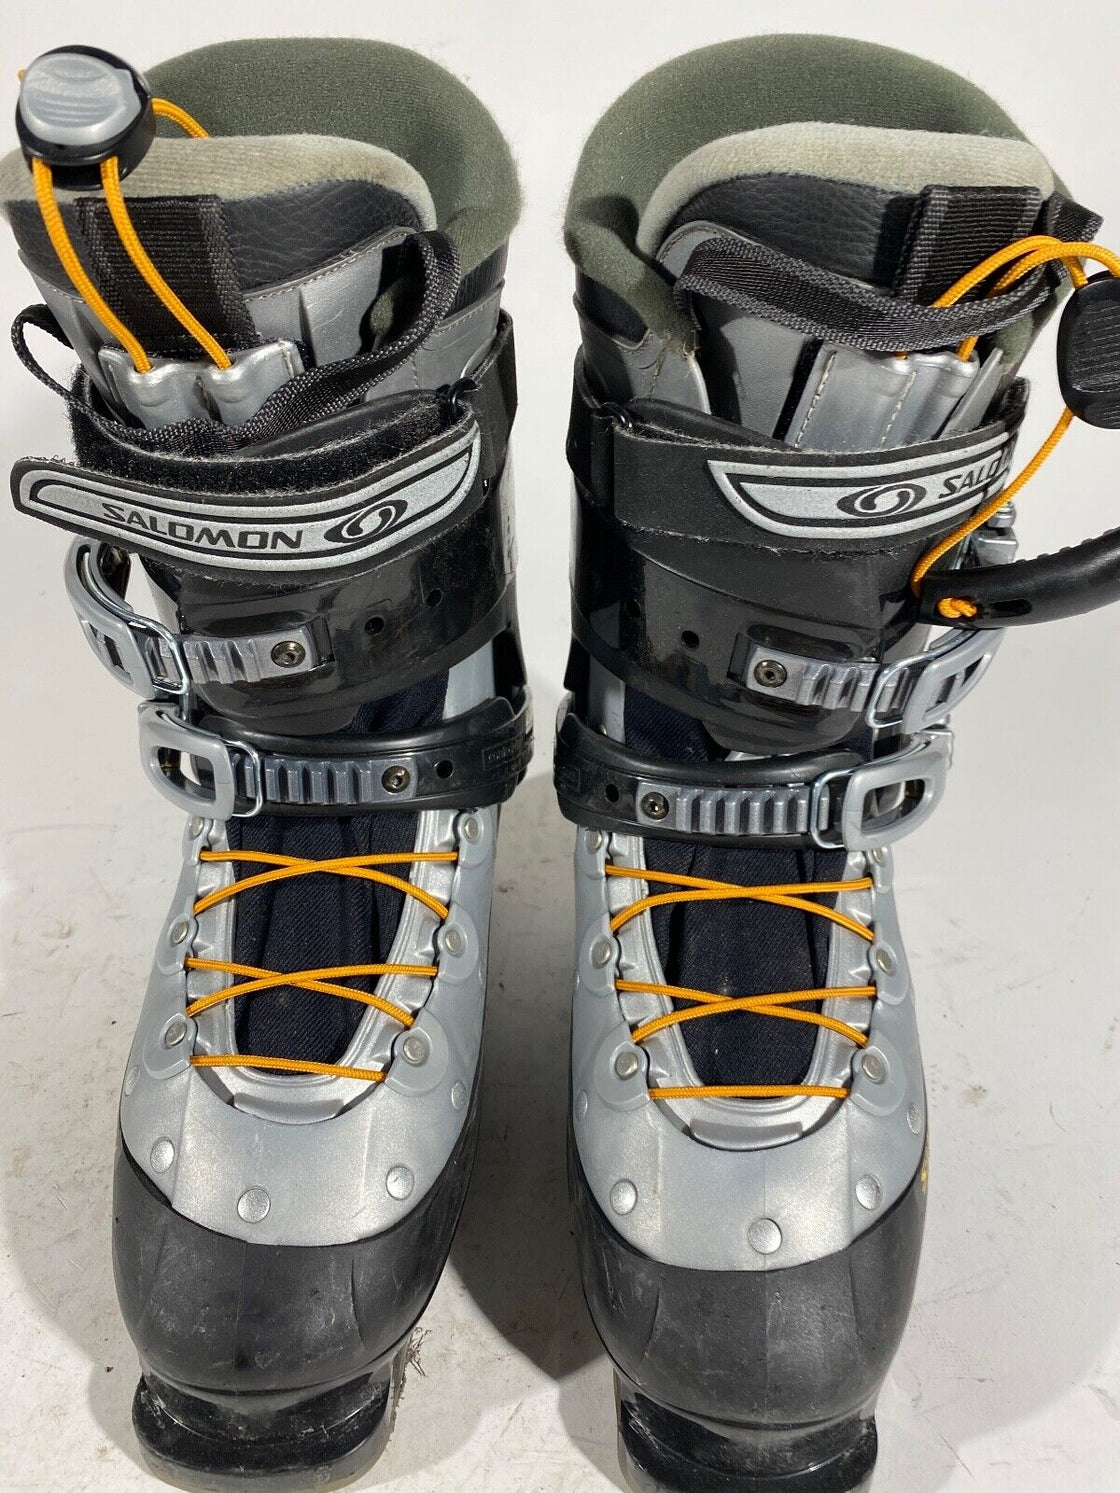 SALOMON Alpine Ski Boots Downhill Size Mondo 273 mm Outer Sole 318 mm